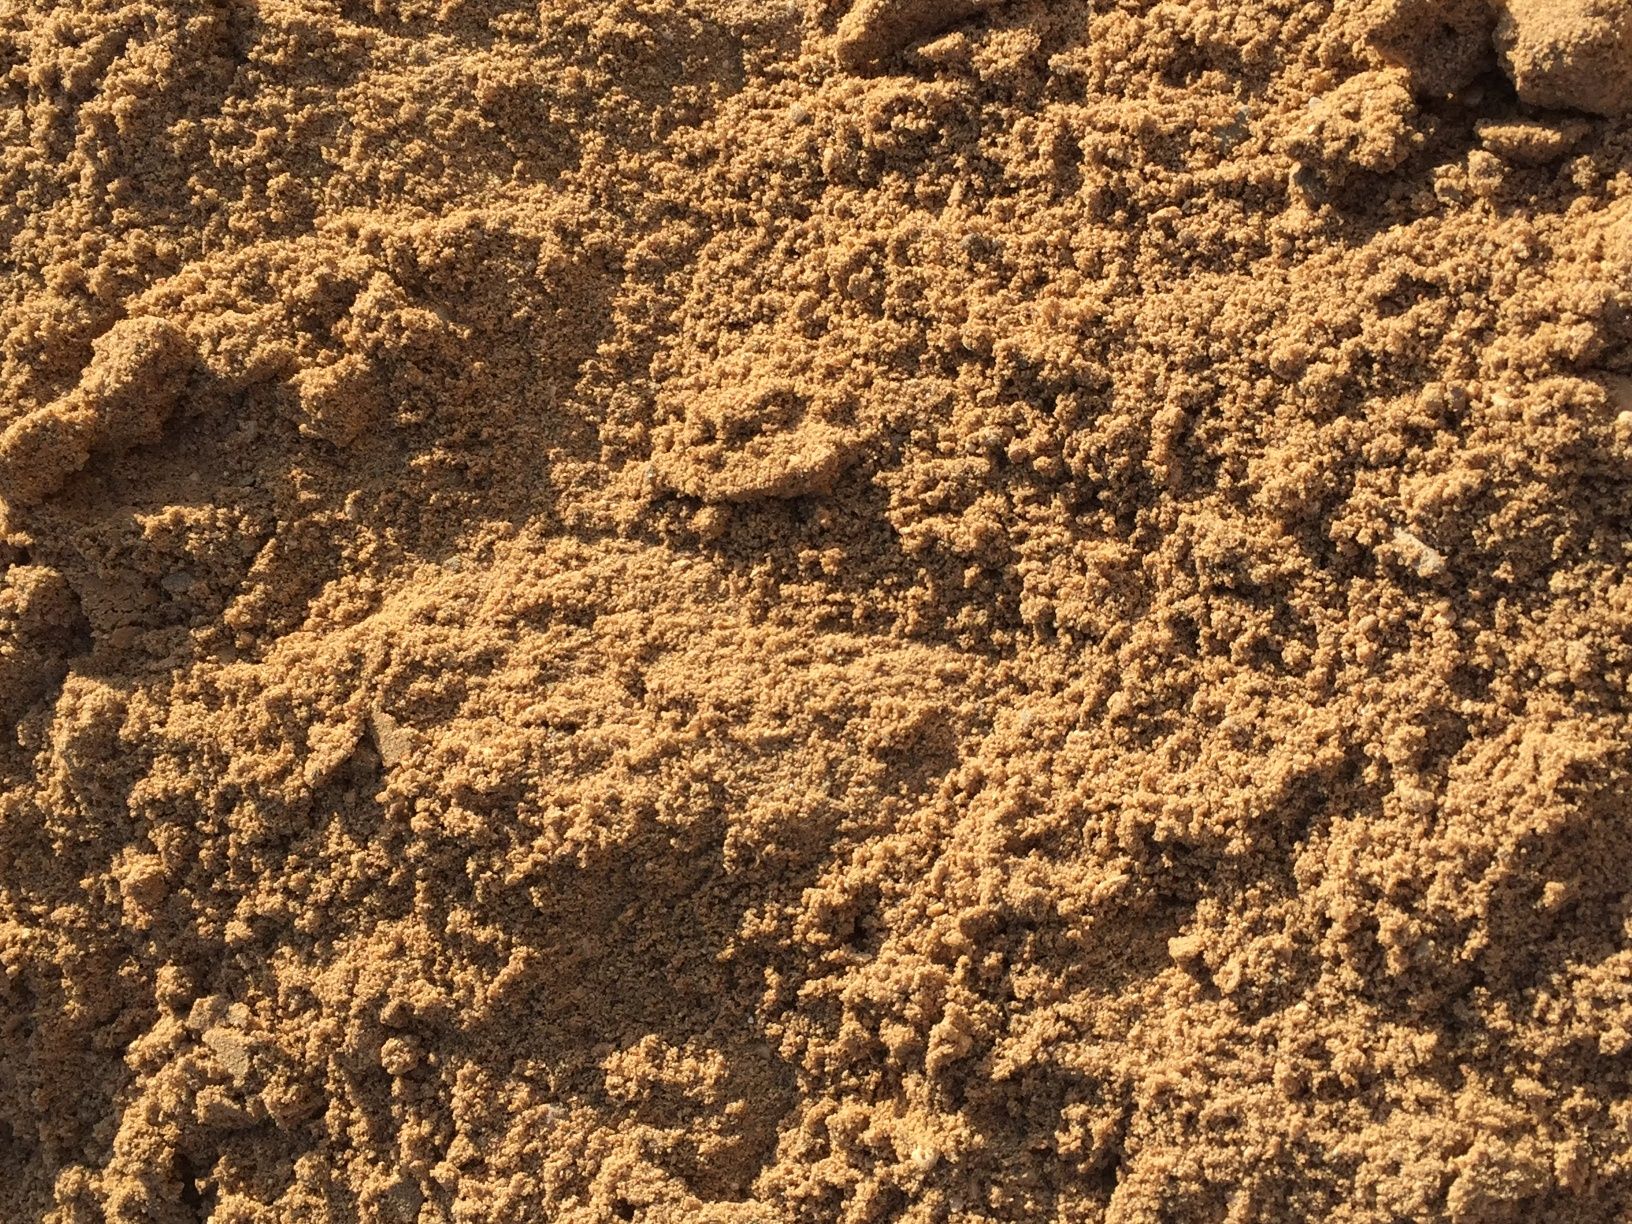 Песок доставка песка чистый песок на штукатурку и на кладку Караганда